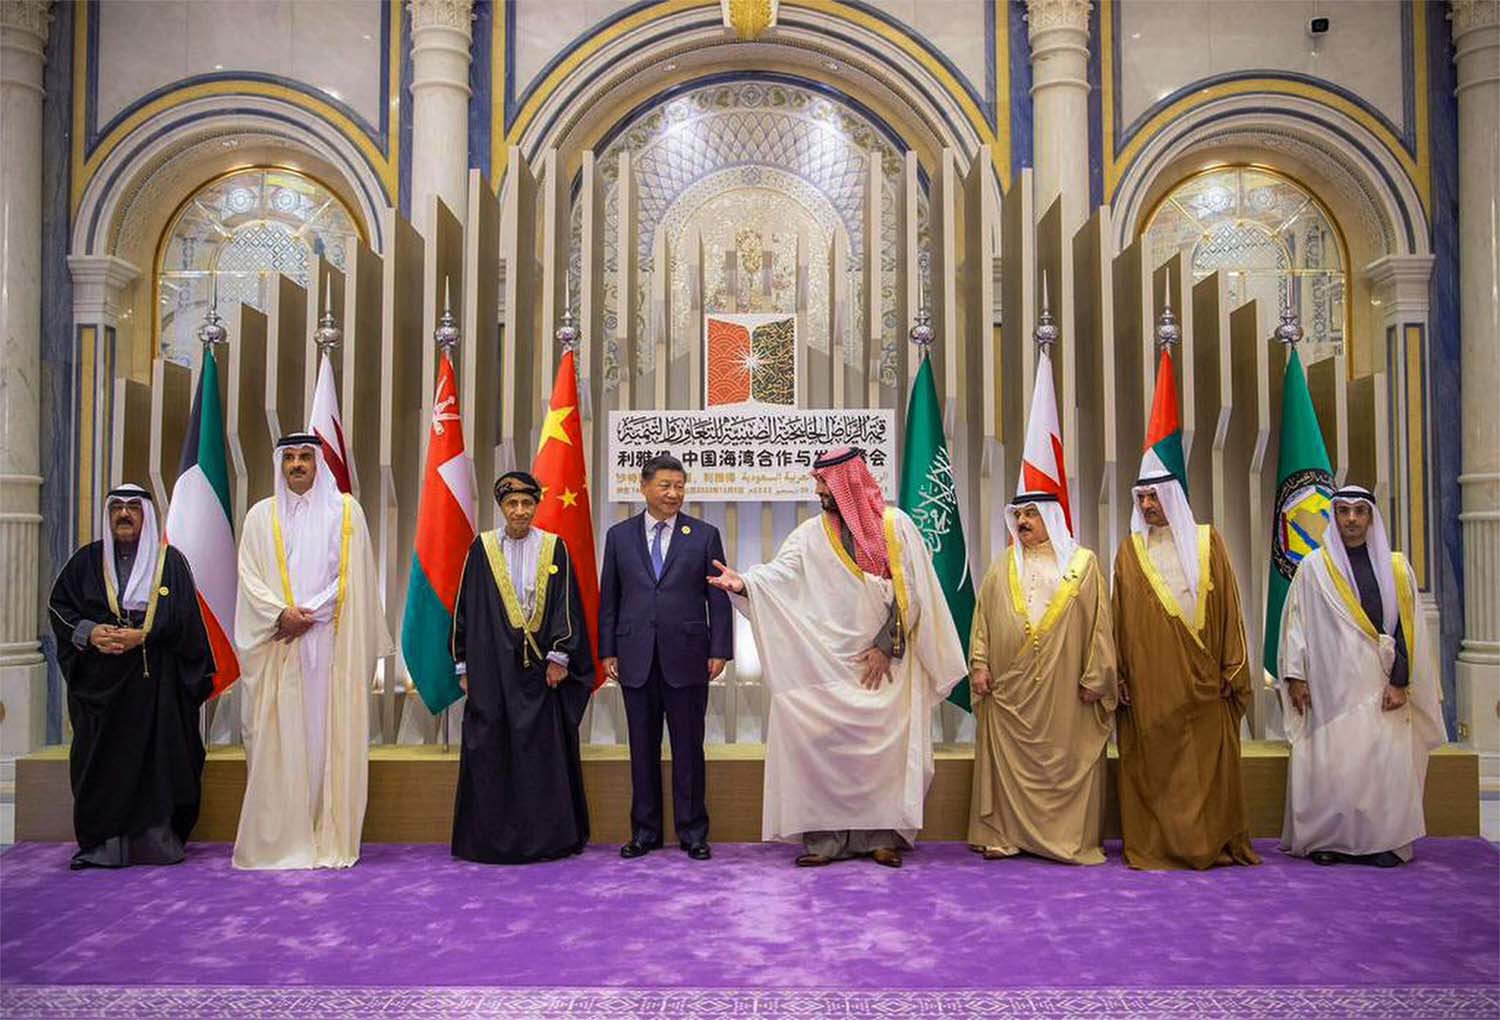 Xi held one-on-one meetings with several Arab leaders